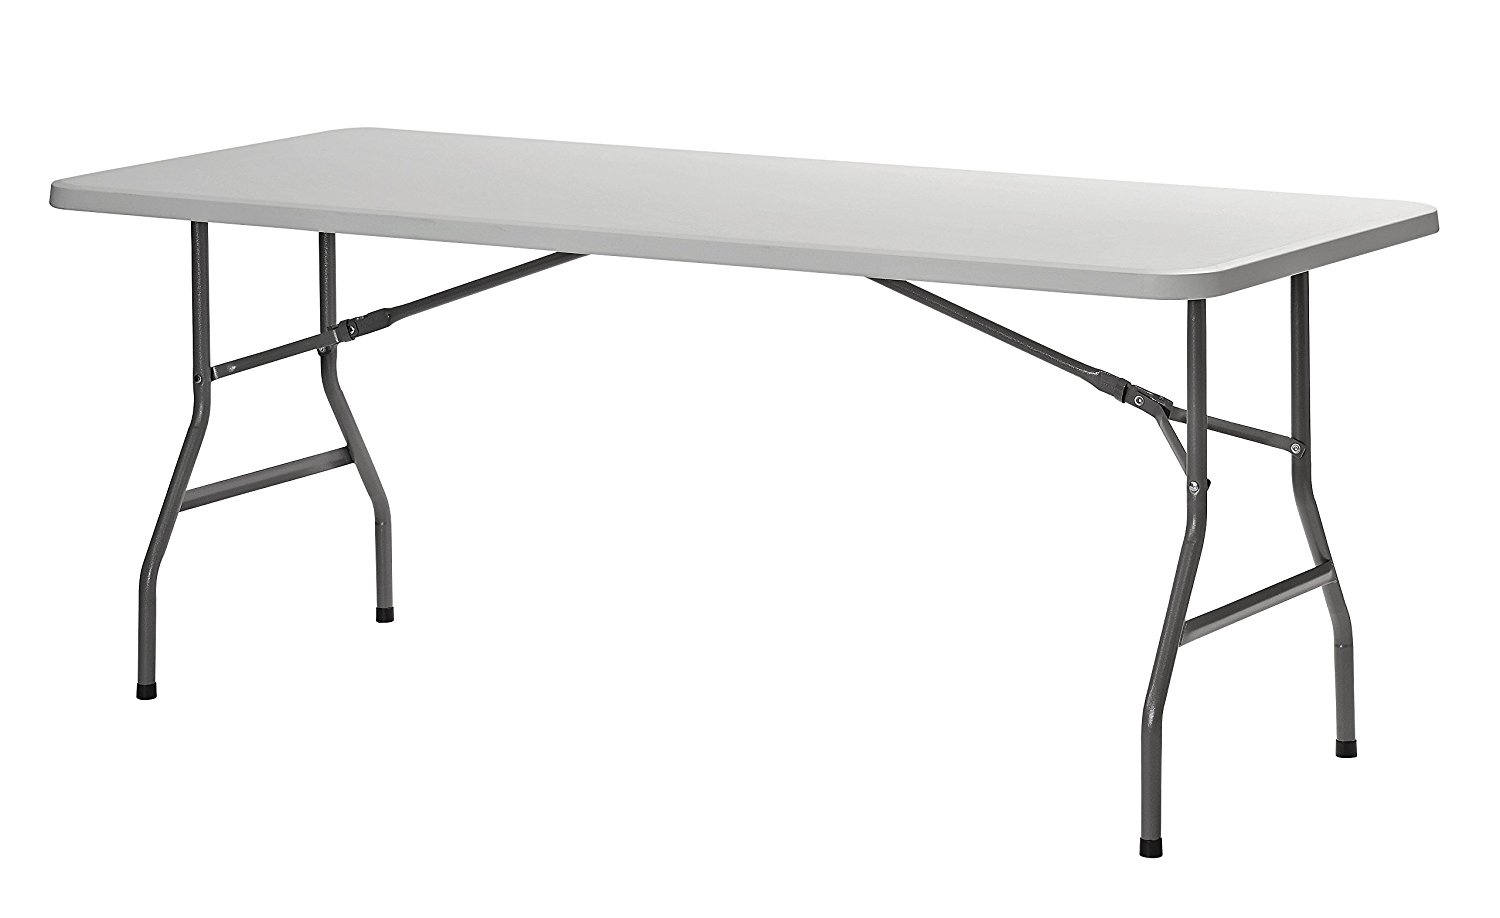 Sandusky Lee PT7230 Commercial Folding Utility Table, 6', White